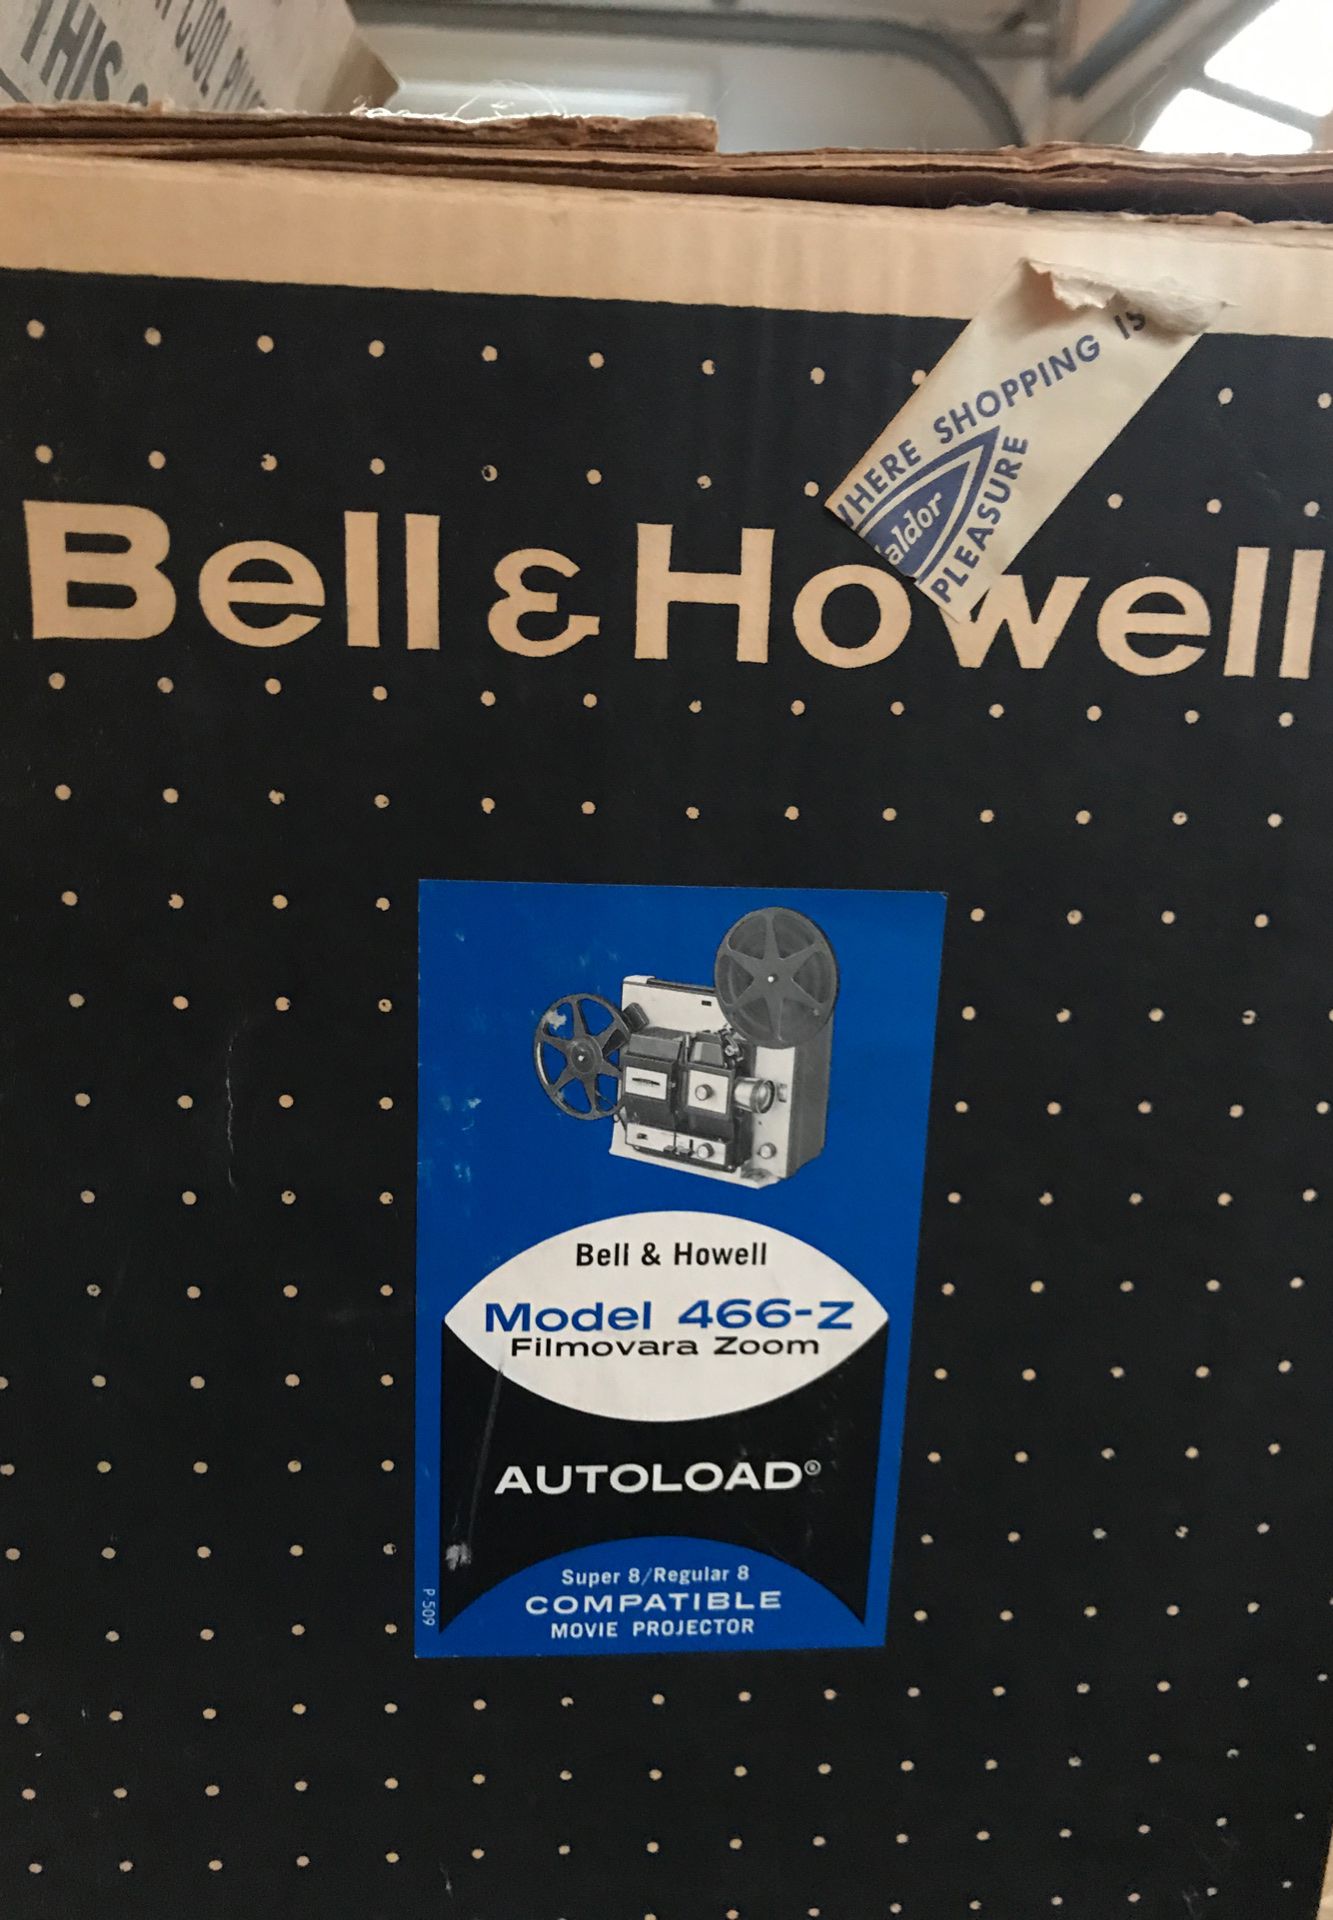 Bell & Howell model 466-z